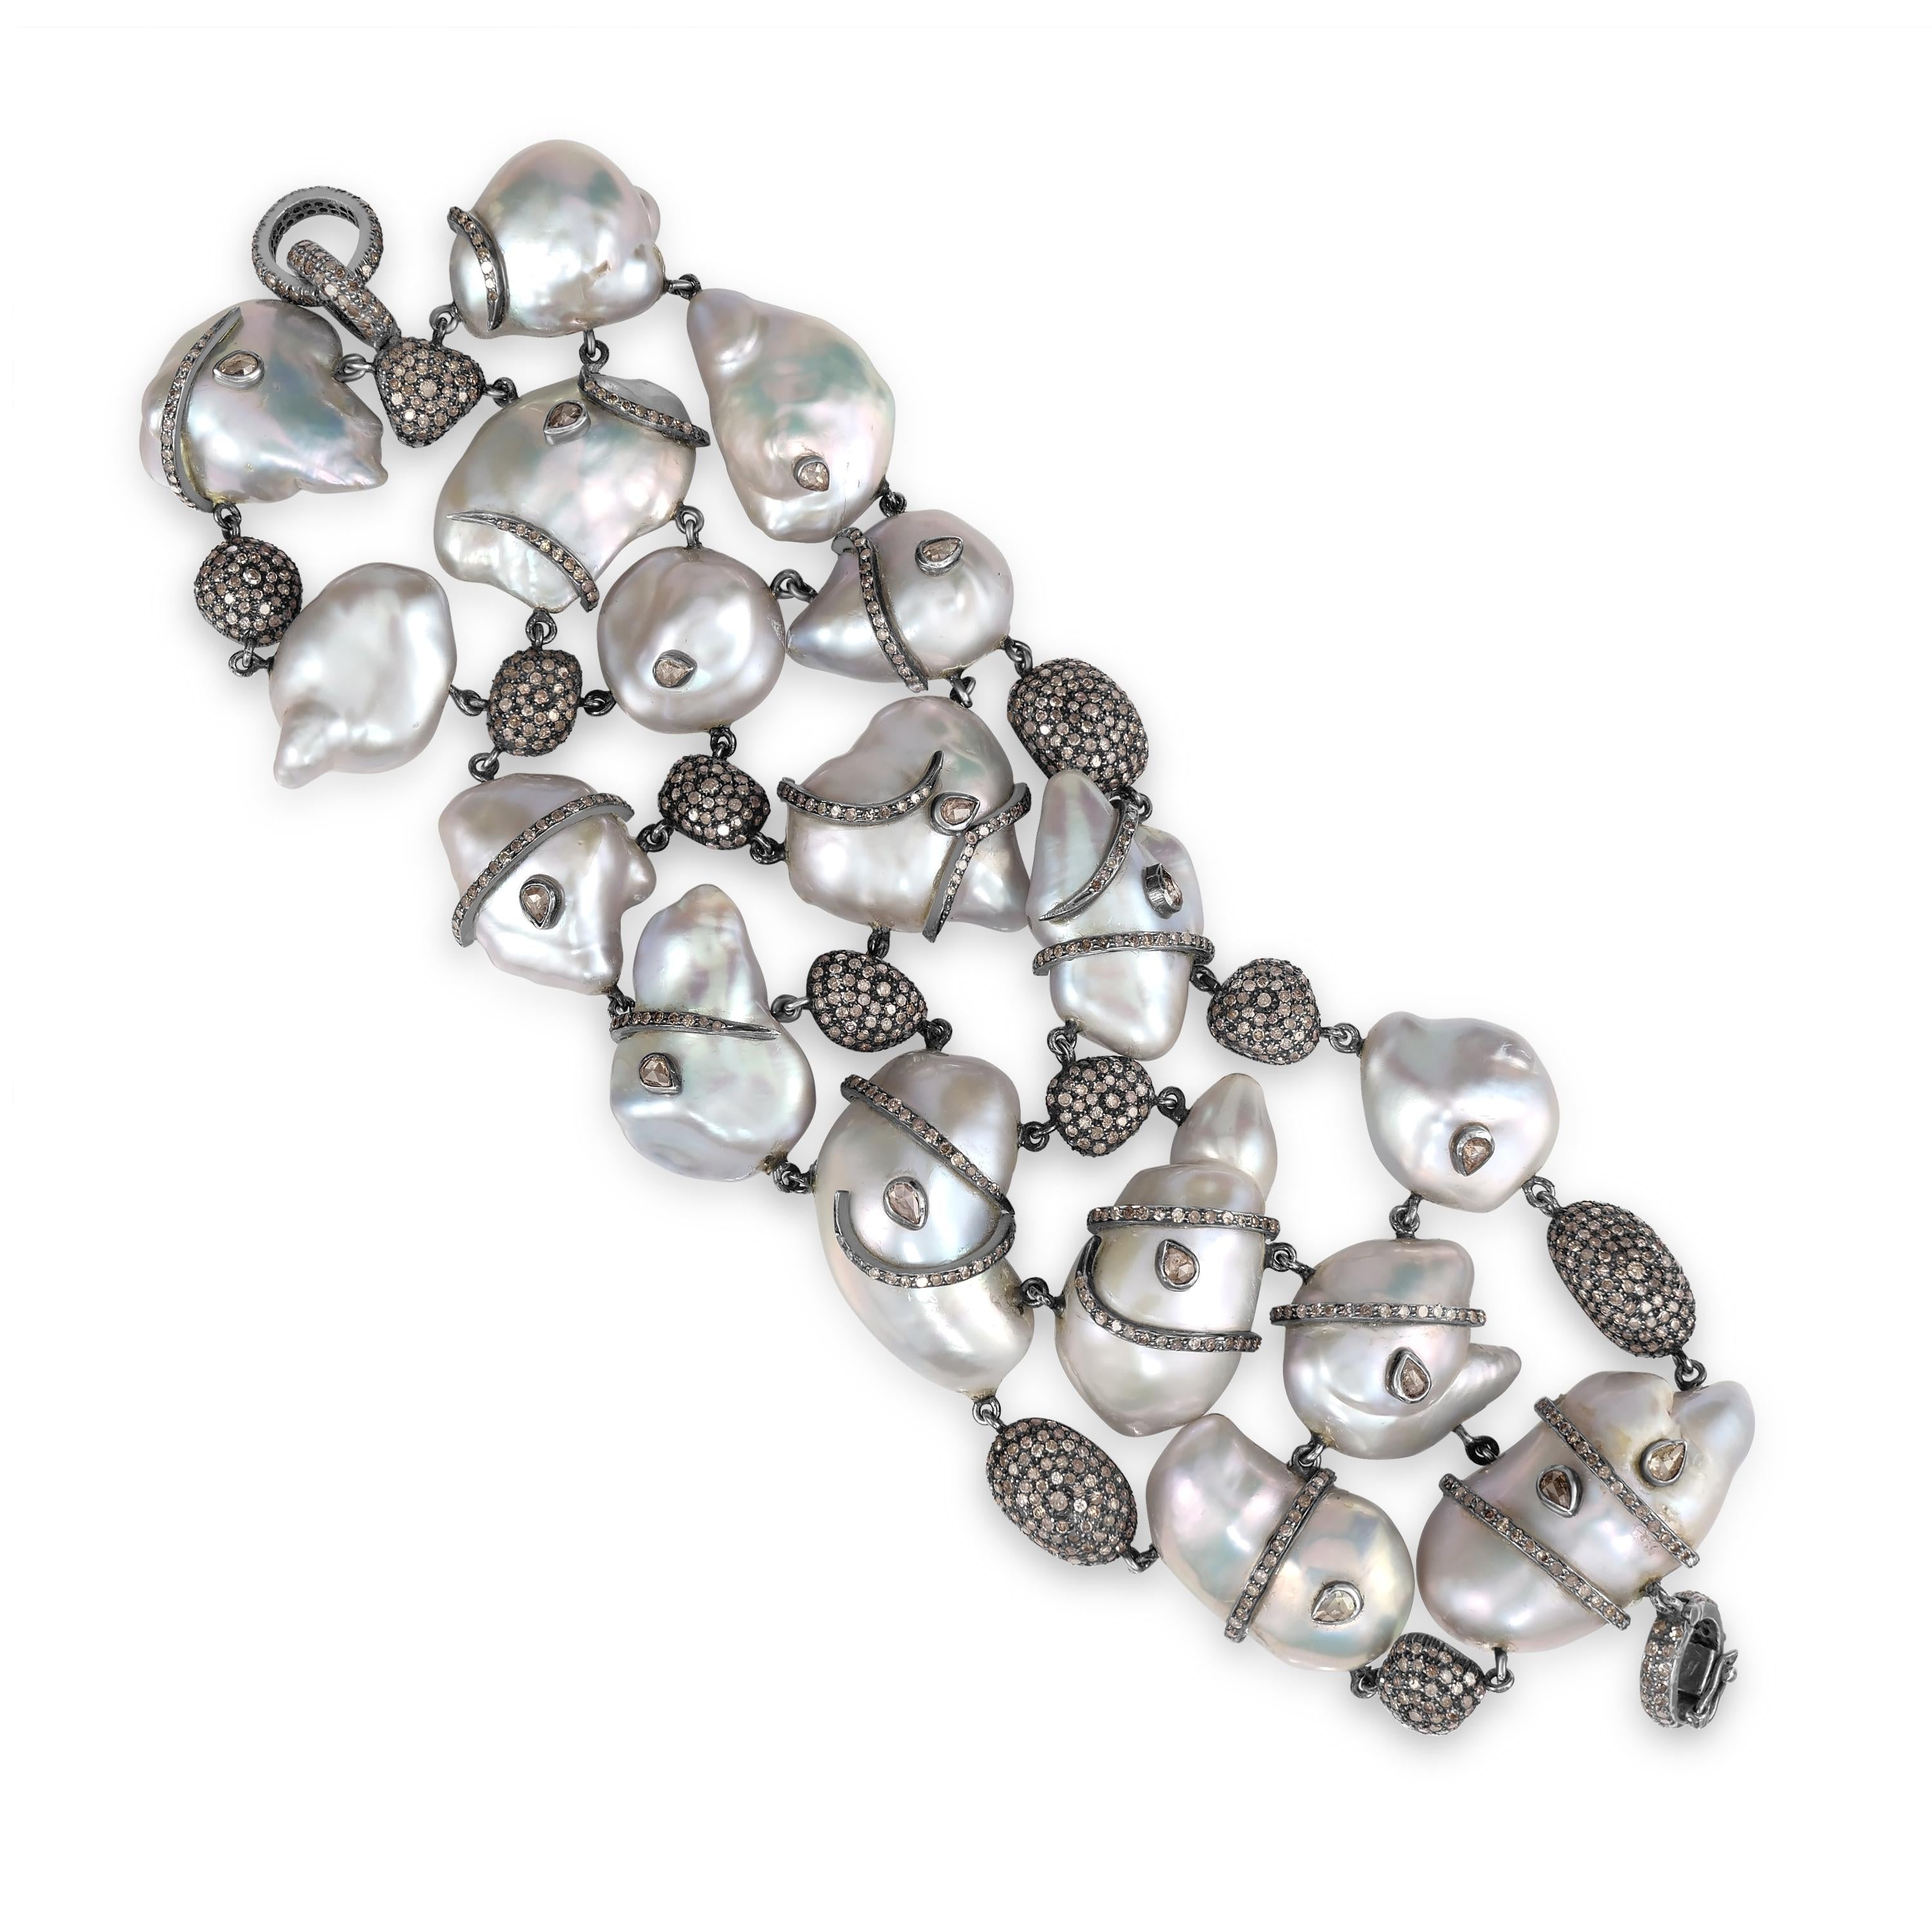 Voici notre exquis bracelet victorien en perles et diamants, une pièce luxueuse qui respire l'élégance et la sophistication.

Réalisé avec une attention méticuleuse aux détails, ce superbe bracelet présente des perles en forme de cœur délicatement